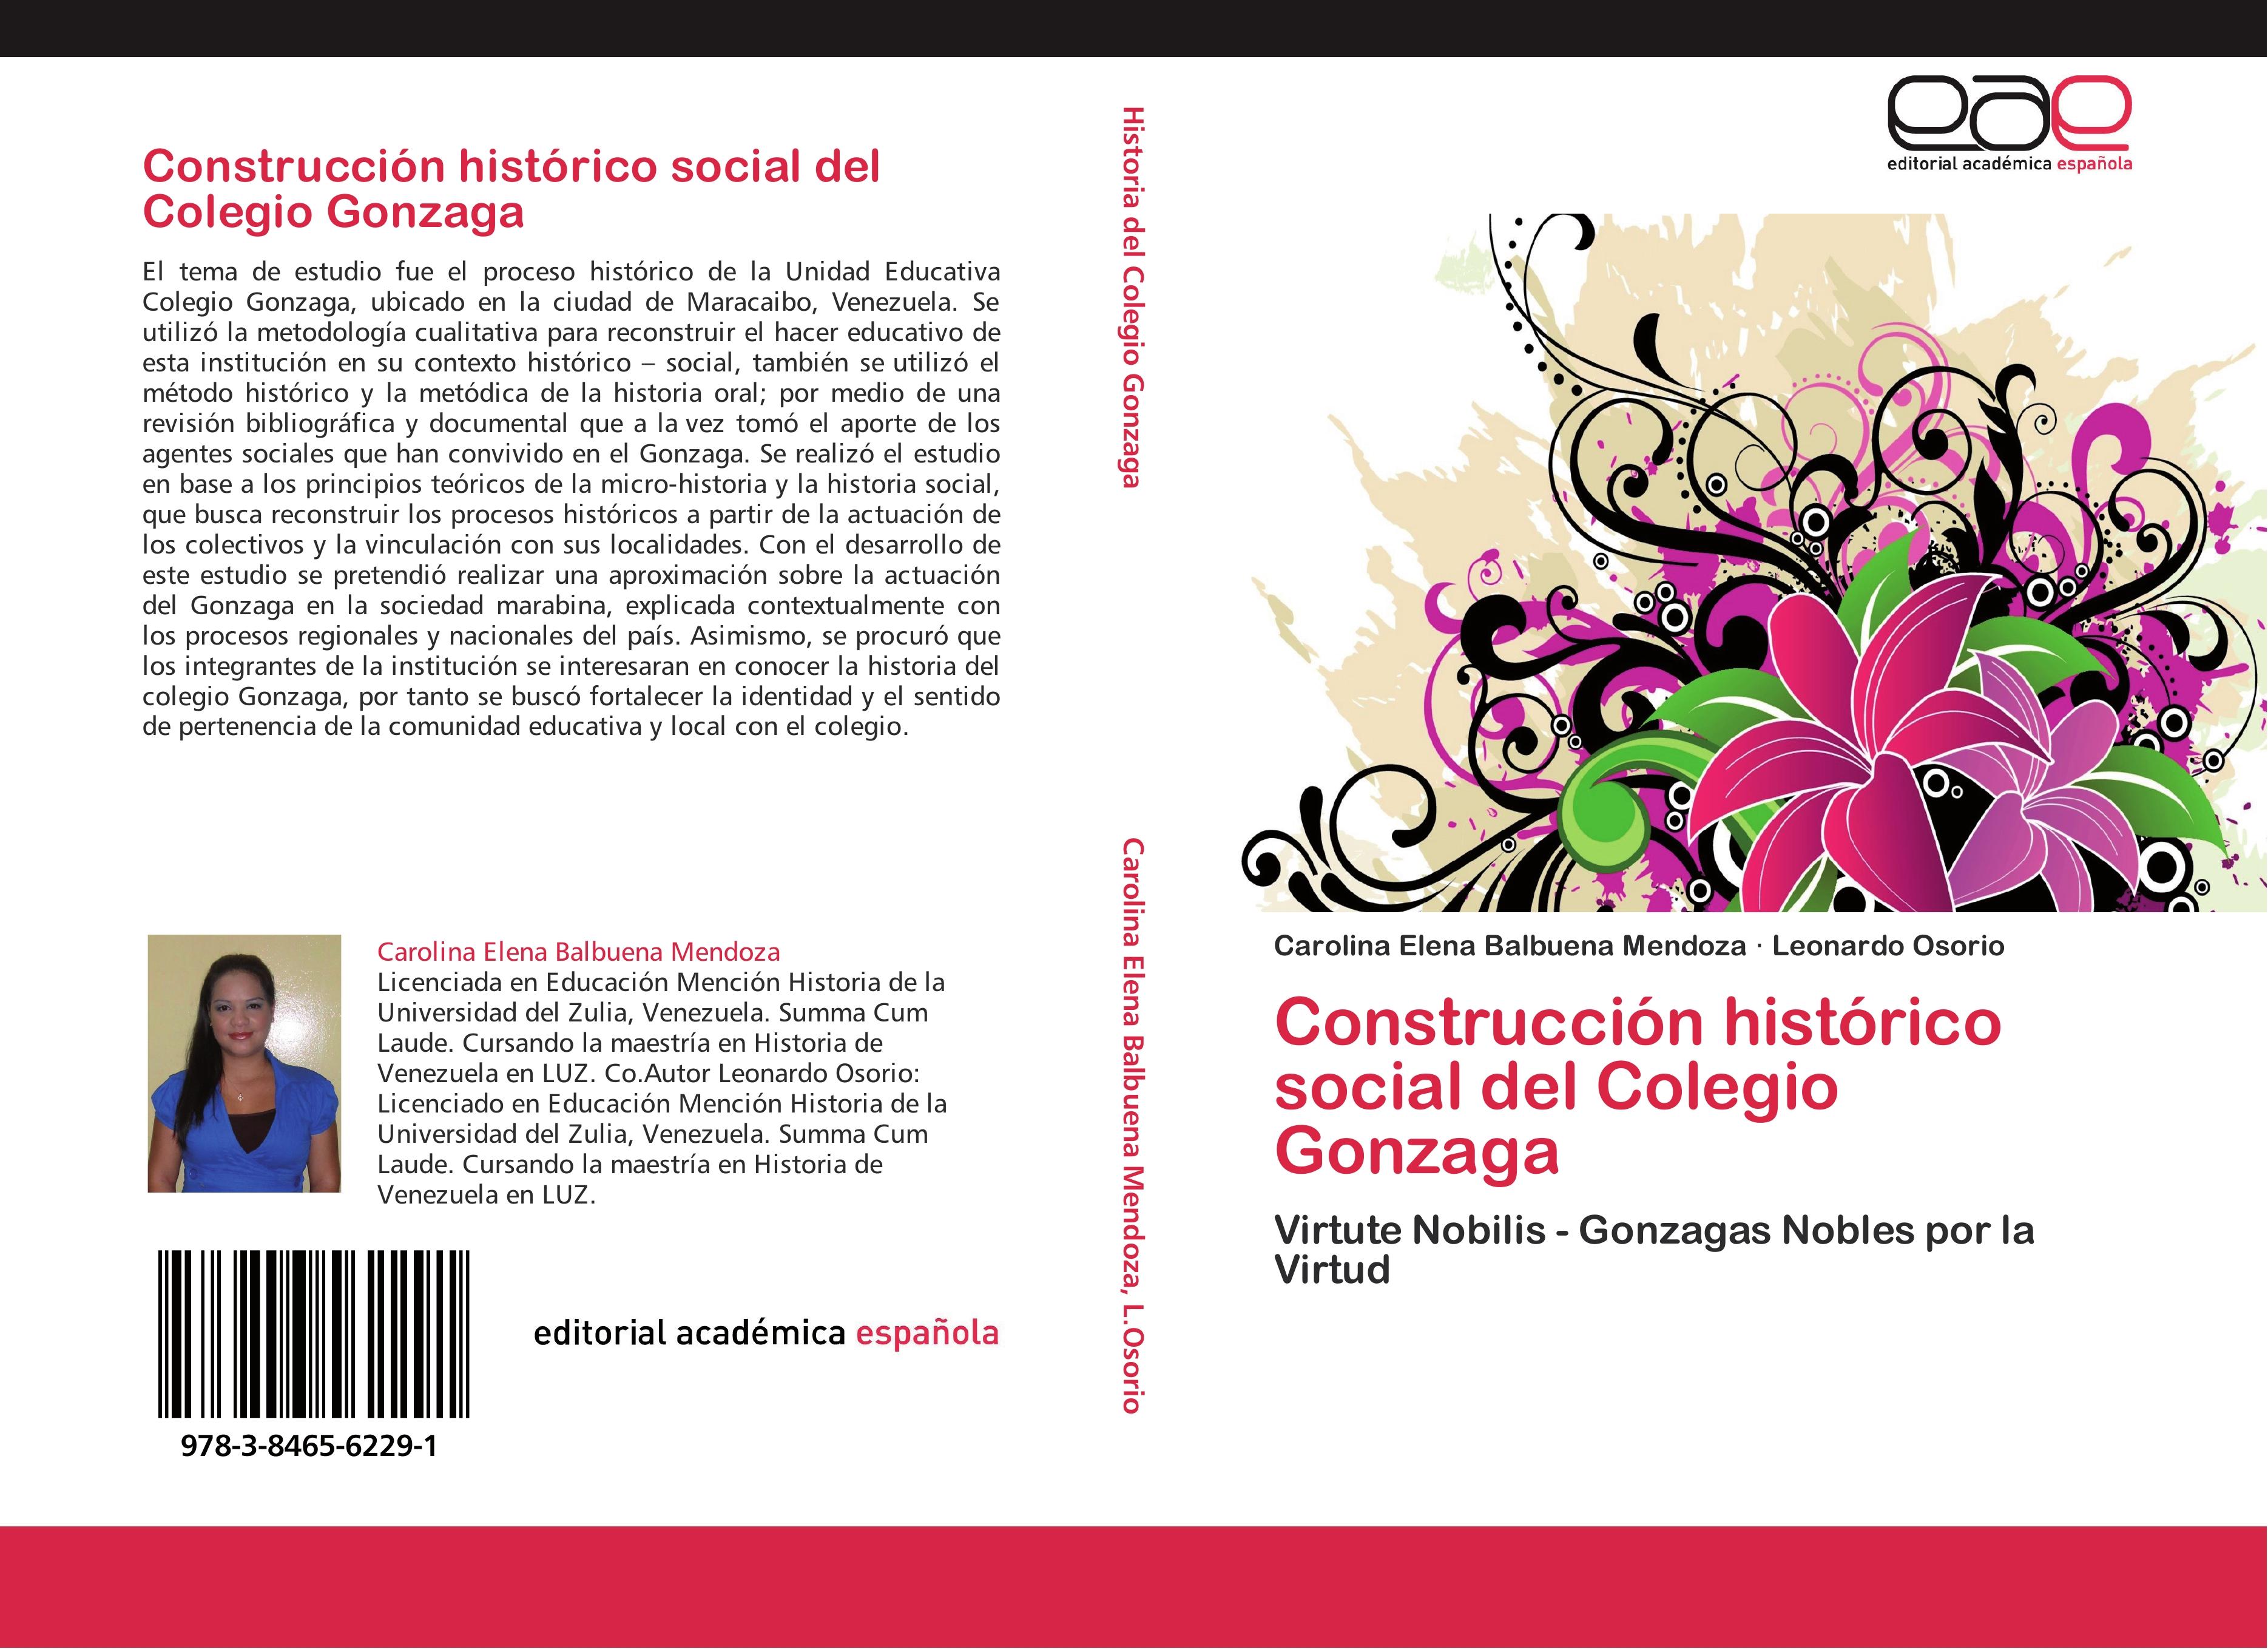 Construcción histórico social del Colegio Gonzaga - Carolina Elena Balbuena Mendoza Leonardo Osorio